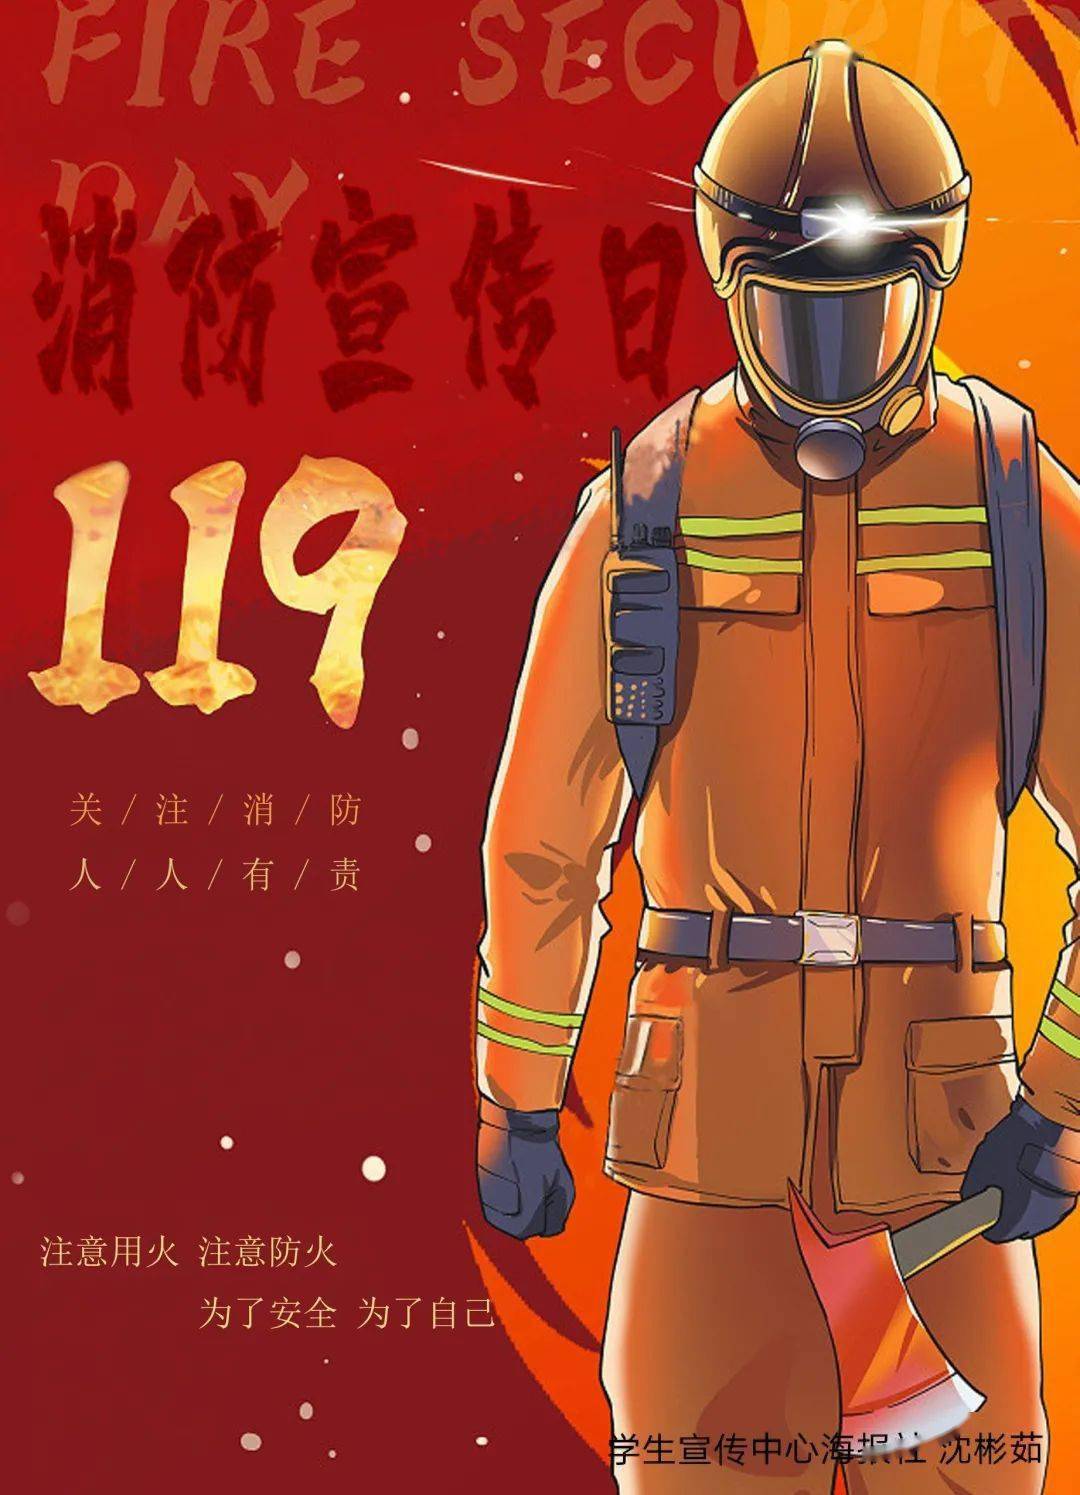 119消防宣传日丨如果消防员不是伟大的工作,那什么才是?致敬烈火英雄!